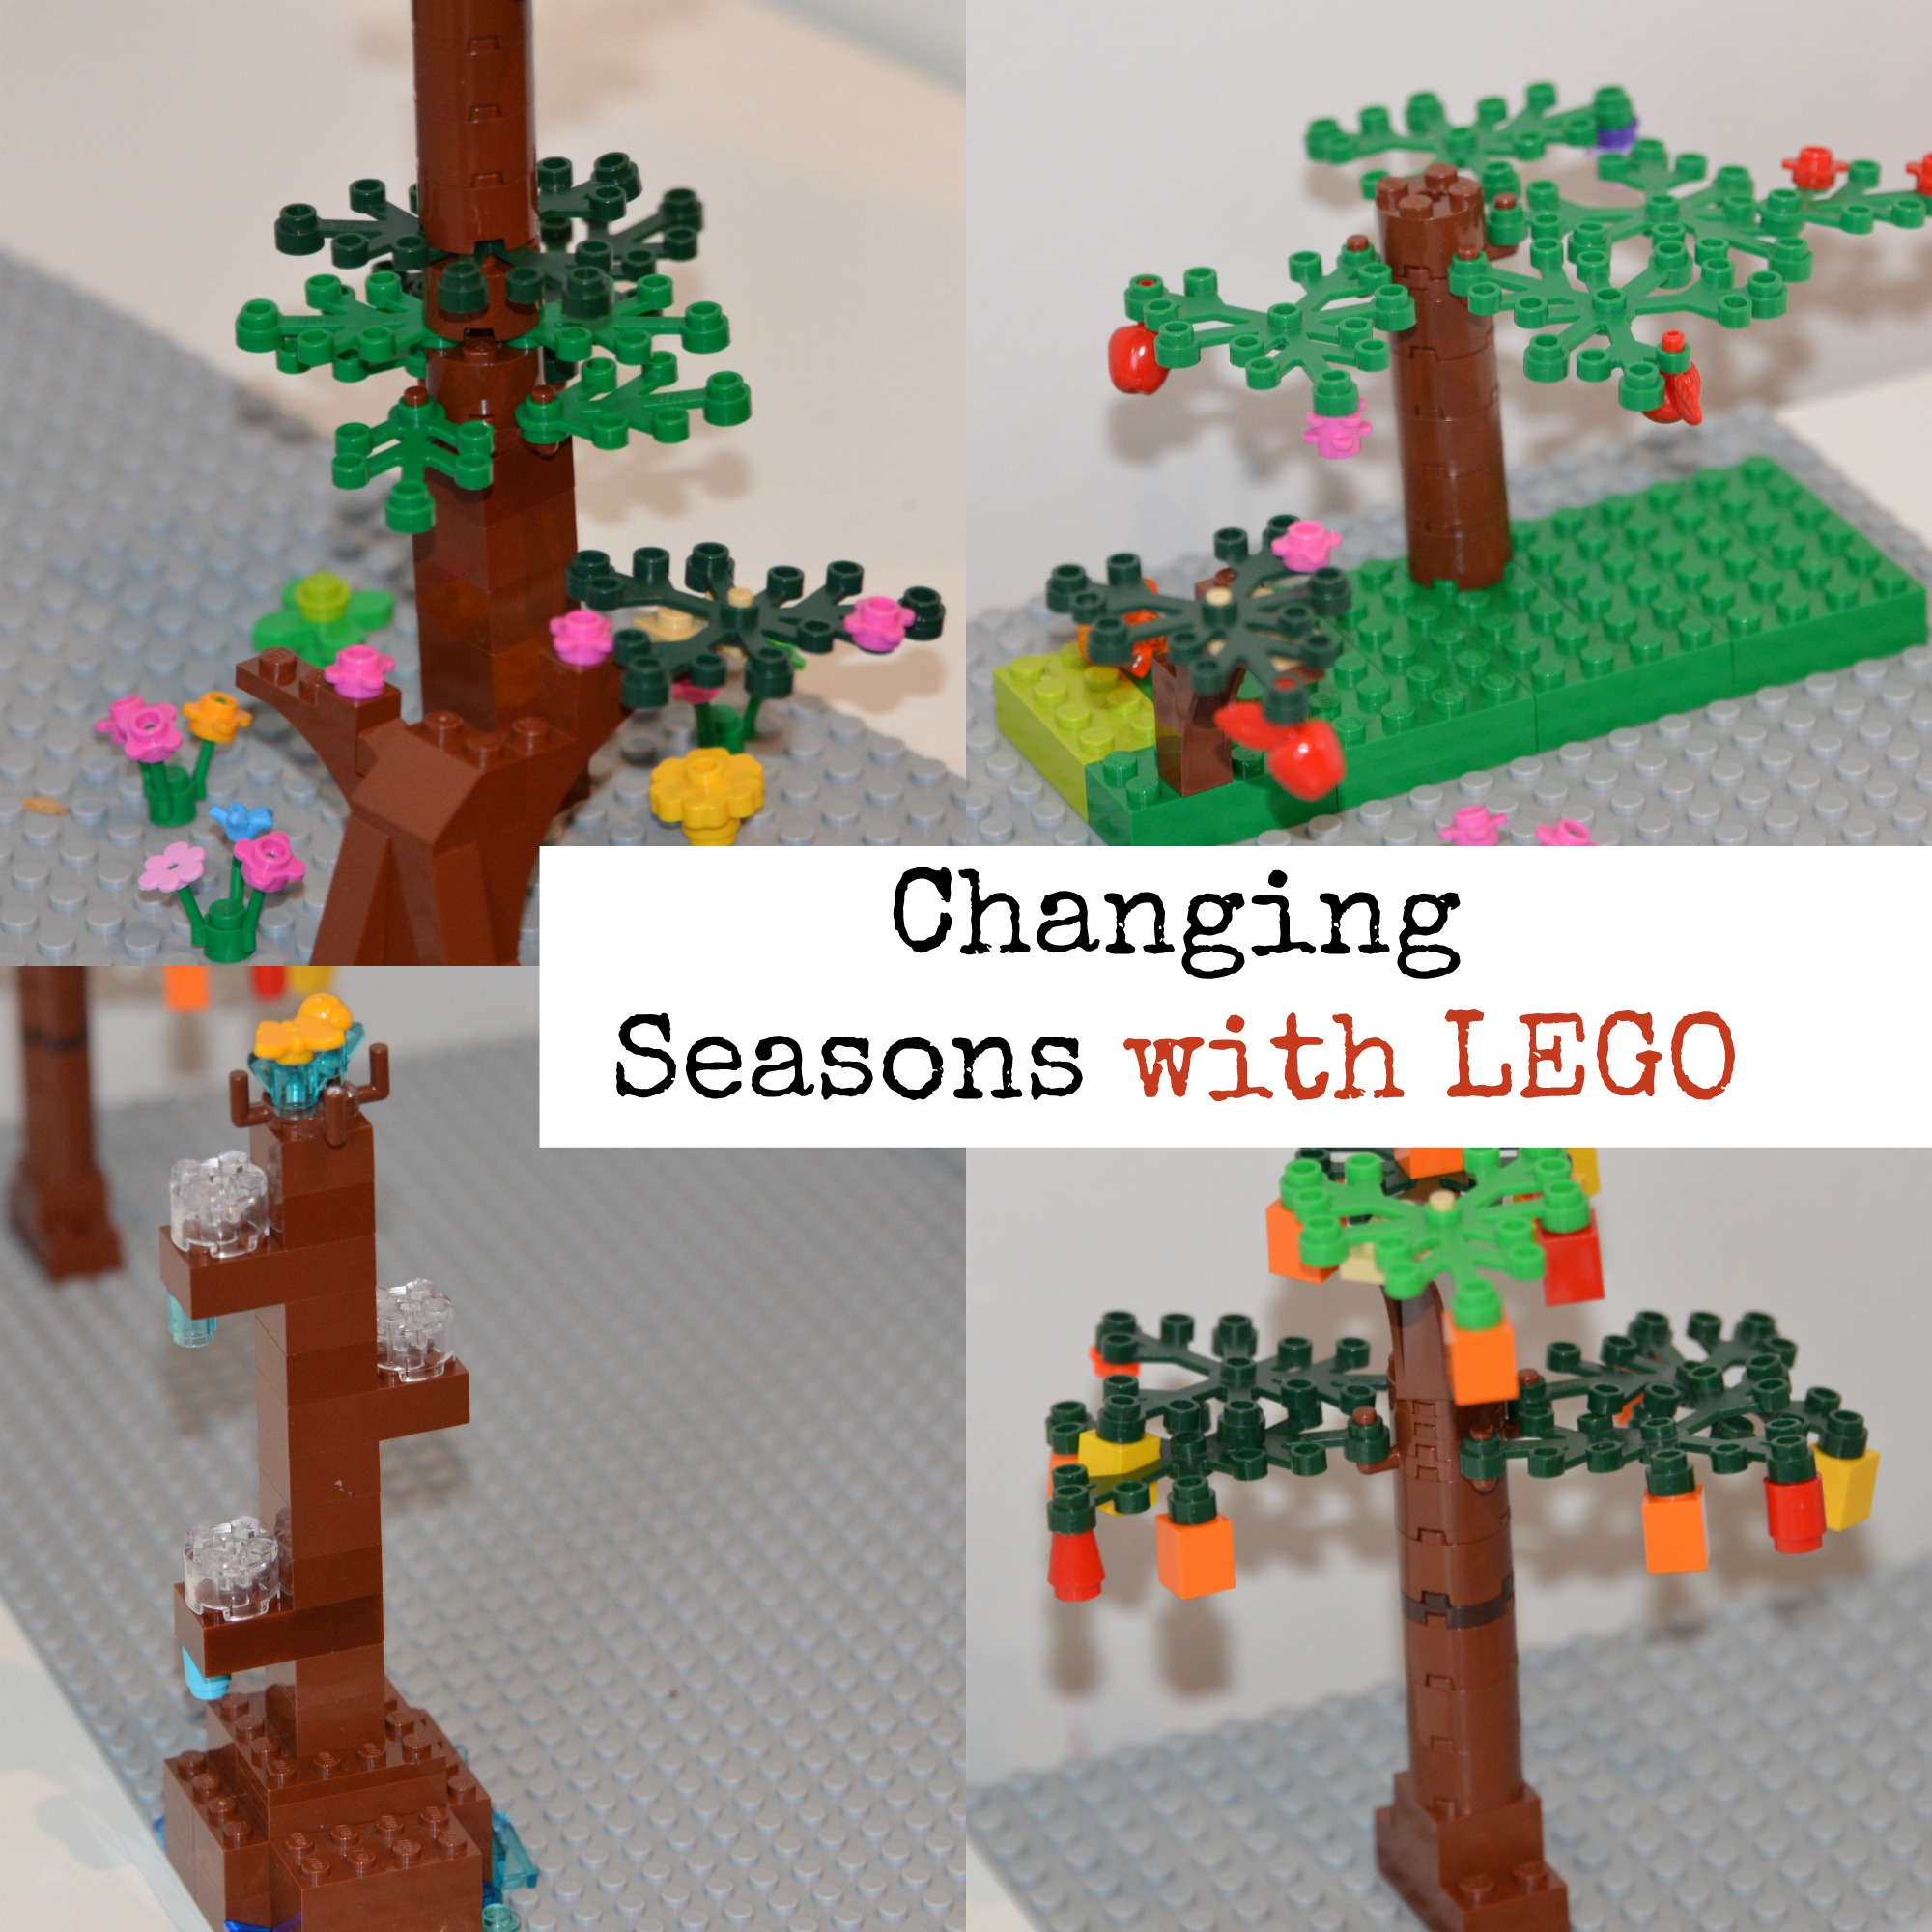 LEGO models of each season